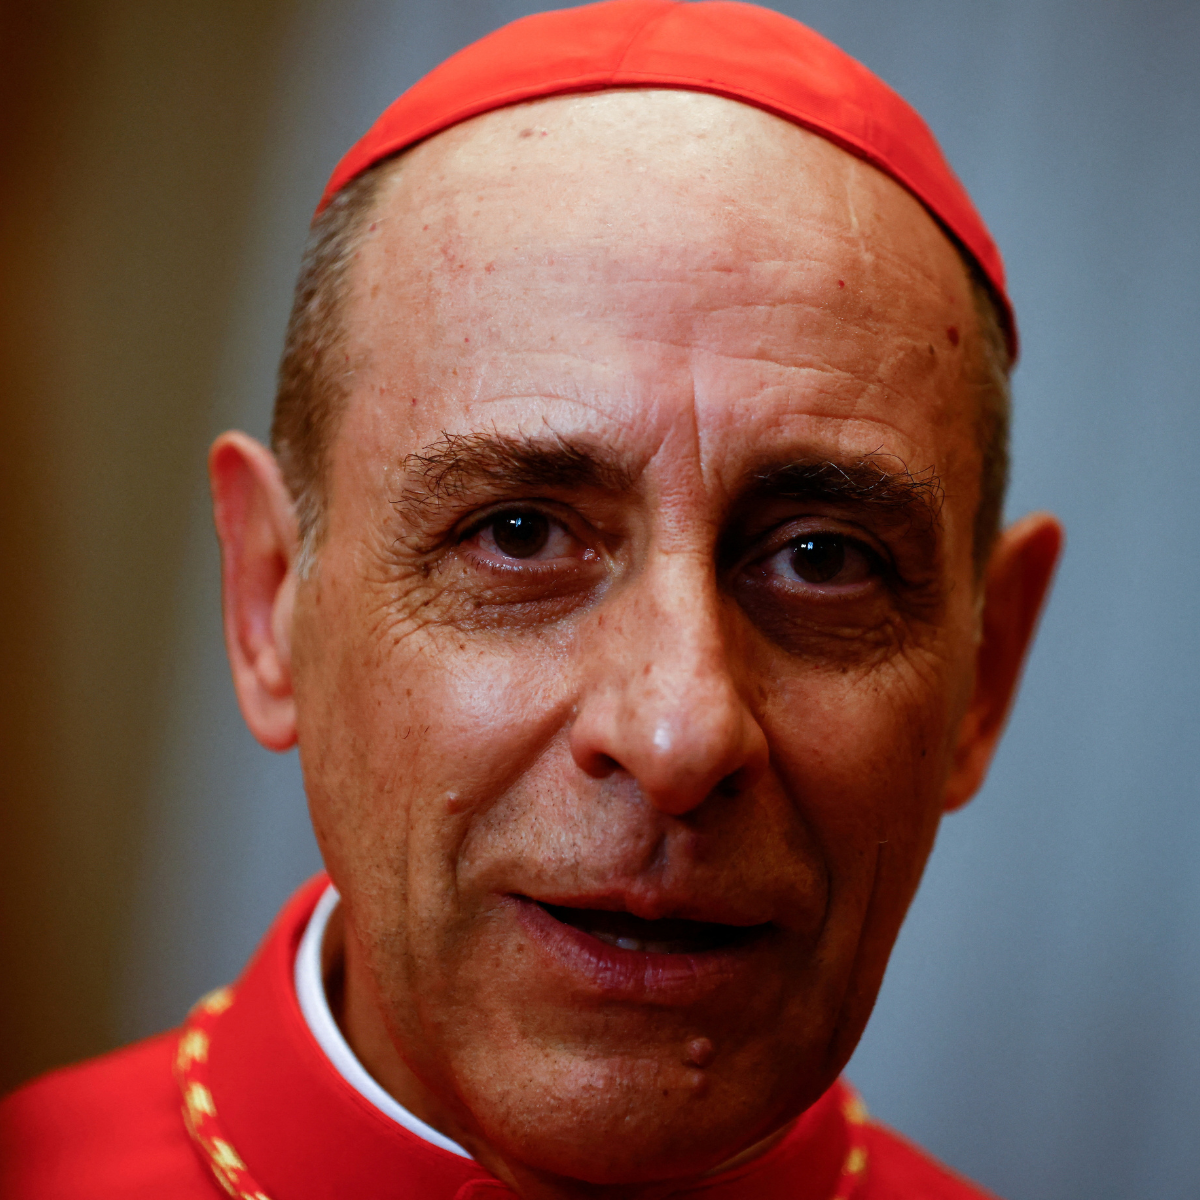  Vaticano se opõe à criminalização da homossexualidade, diz cardeal 